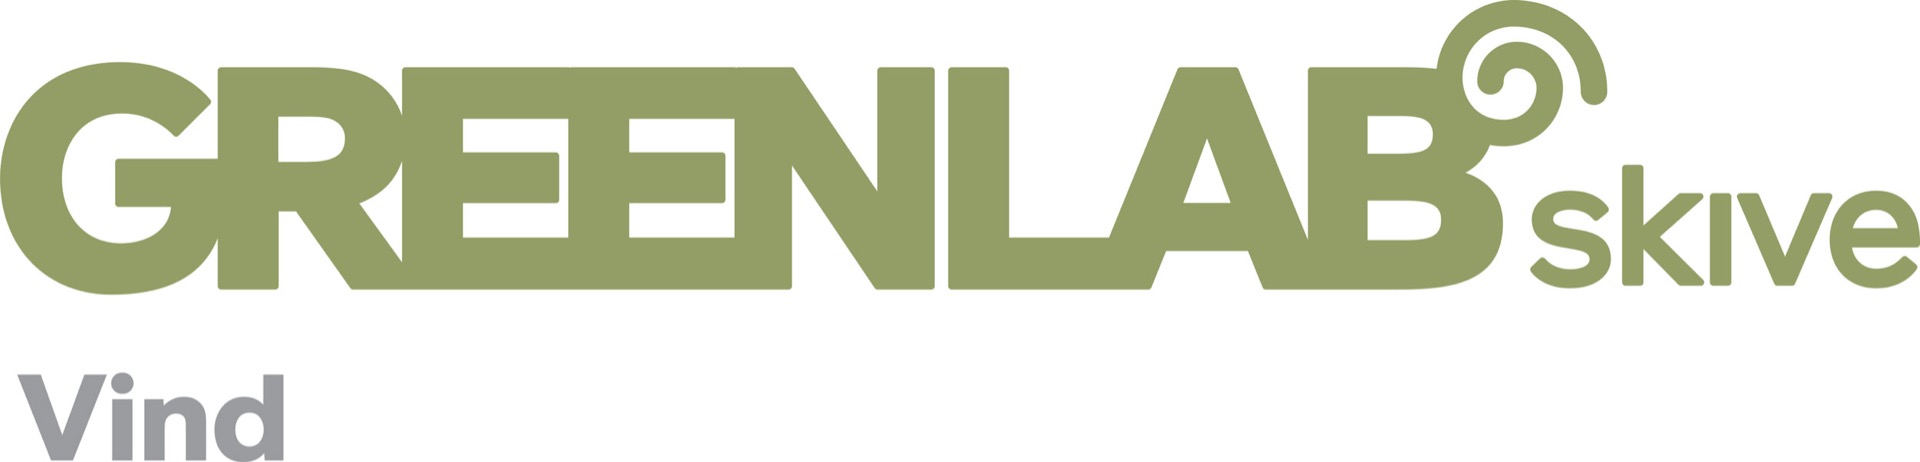 GreenLab Skive Vind logo